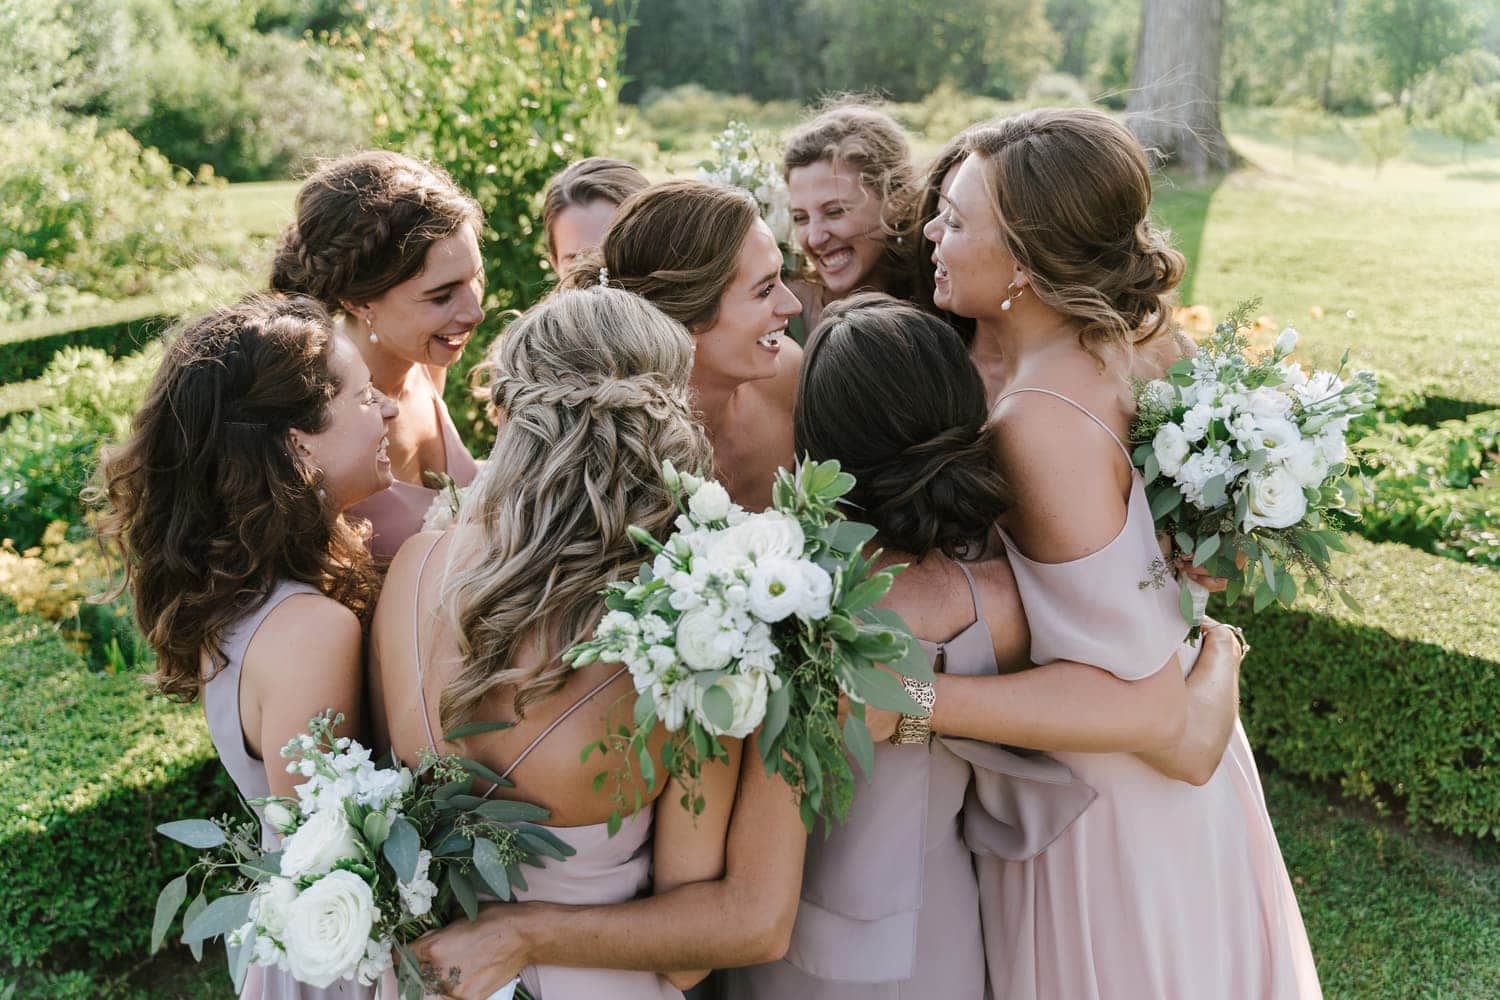 A bride hugging her bridesmaids